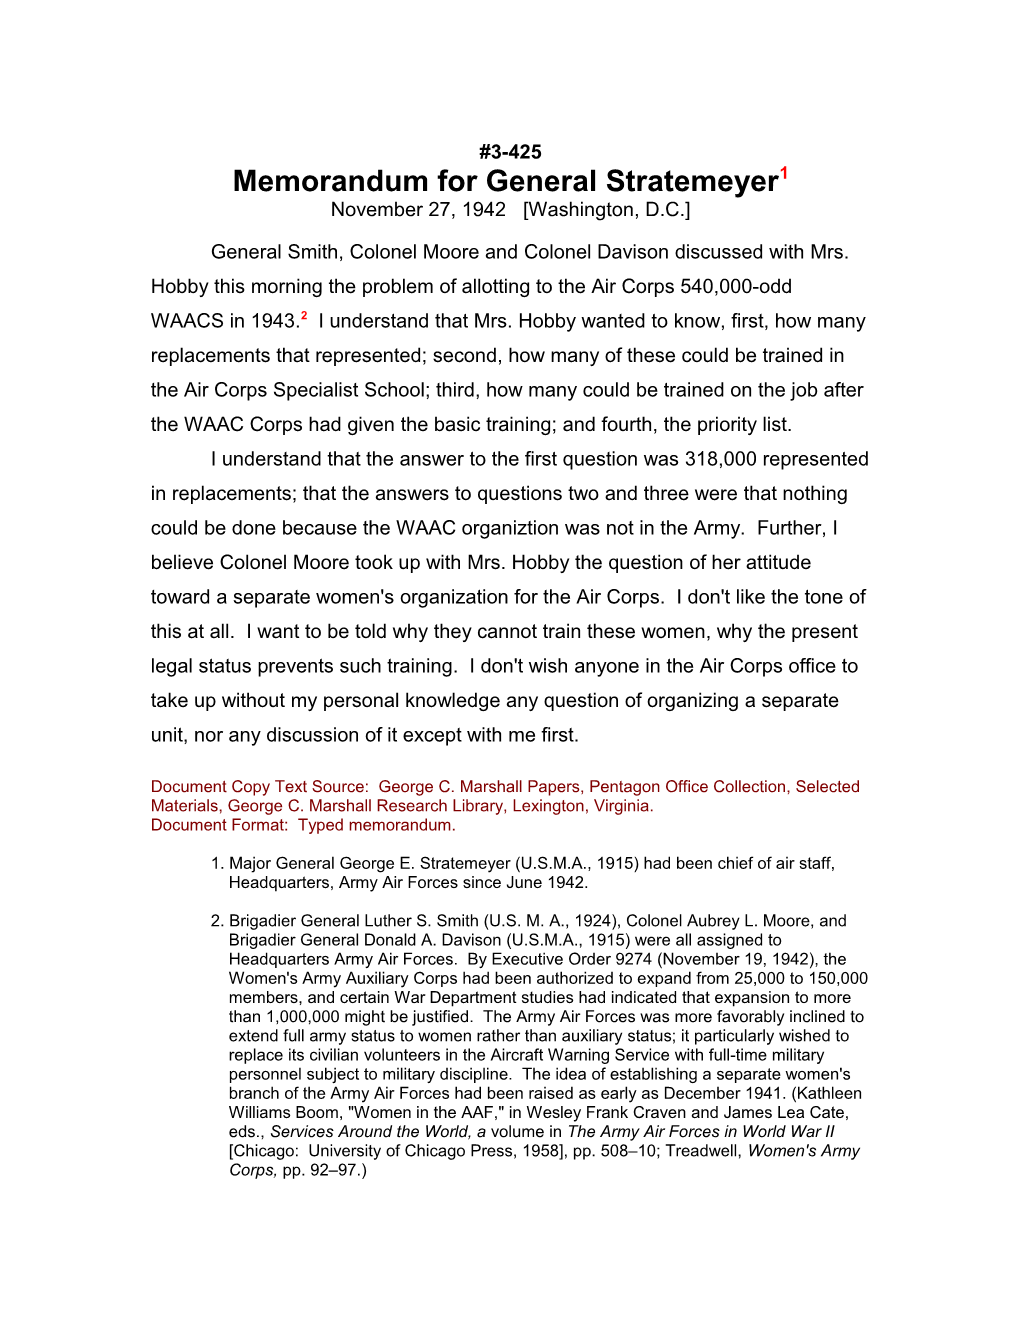 Memorandum for General Stratemeyer1